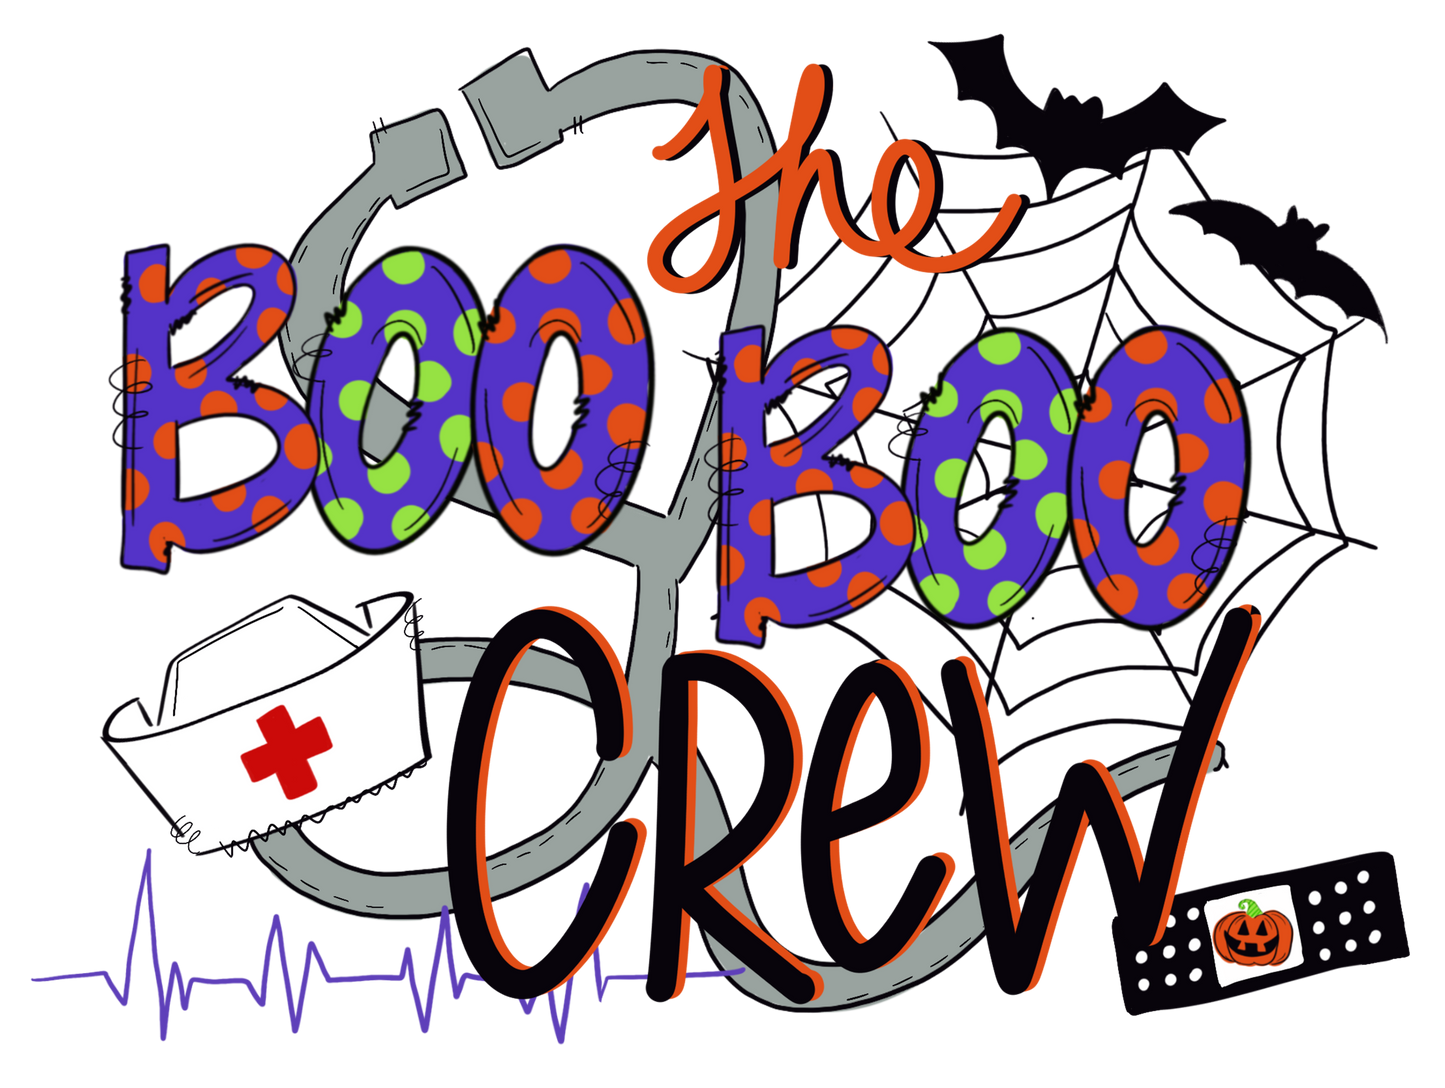 The Boo Boo Crew Design Transfer